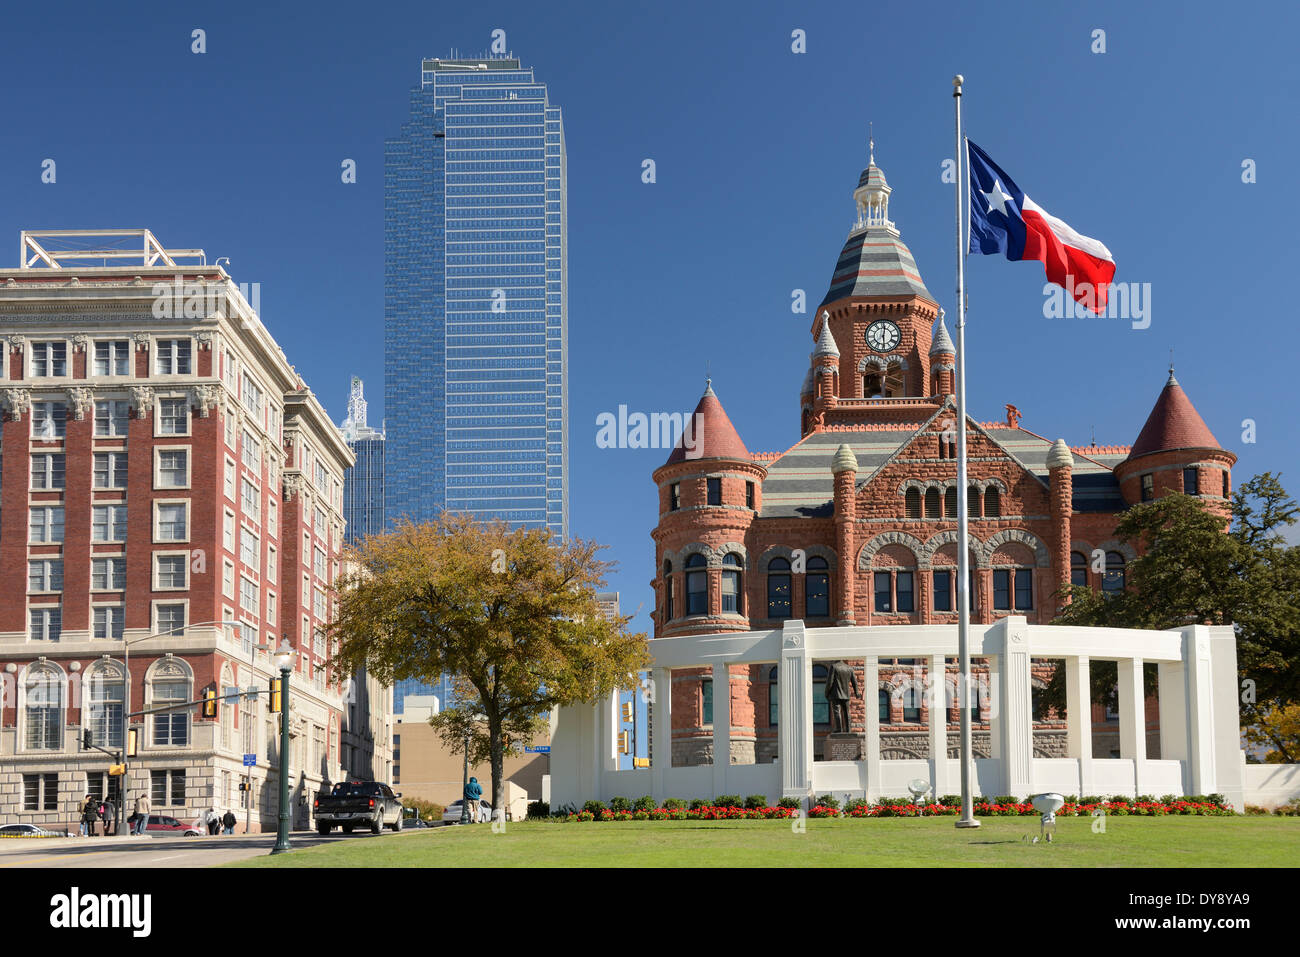 Amérique du Nord, Texas, USA, United States, Amérique, Dallas, Dealey Plaza, du drapeau, des bâtiments Banque D'Images